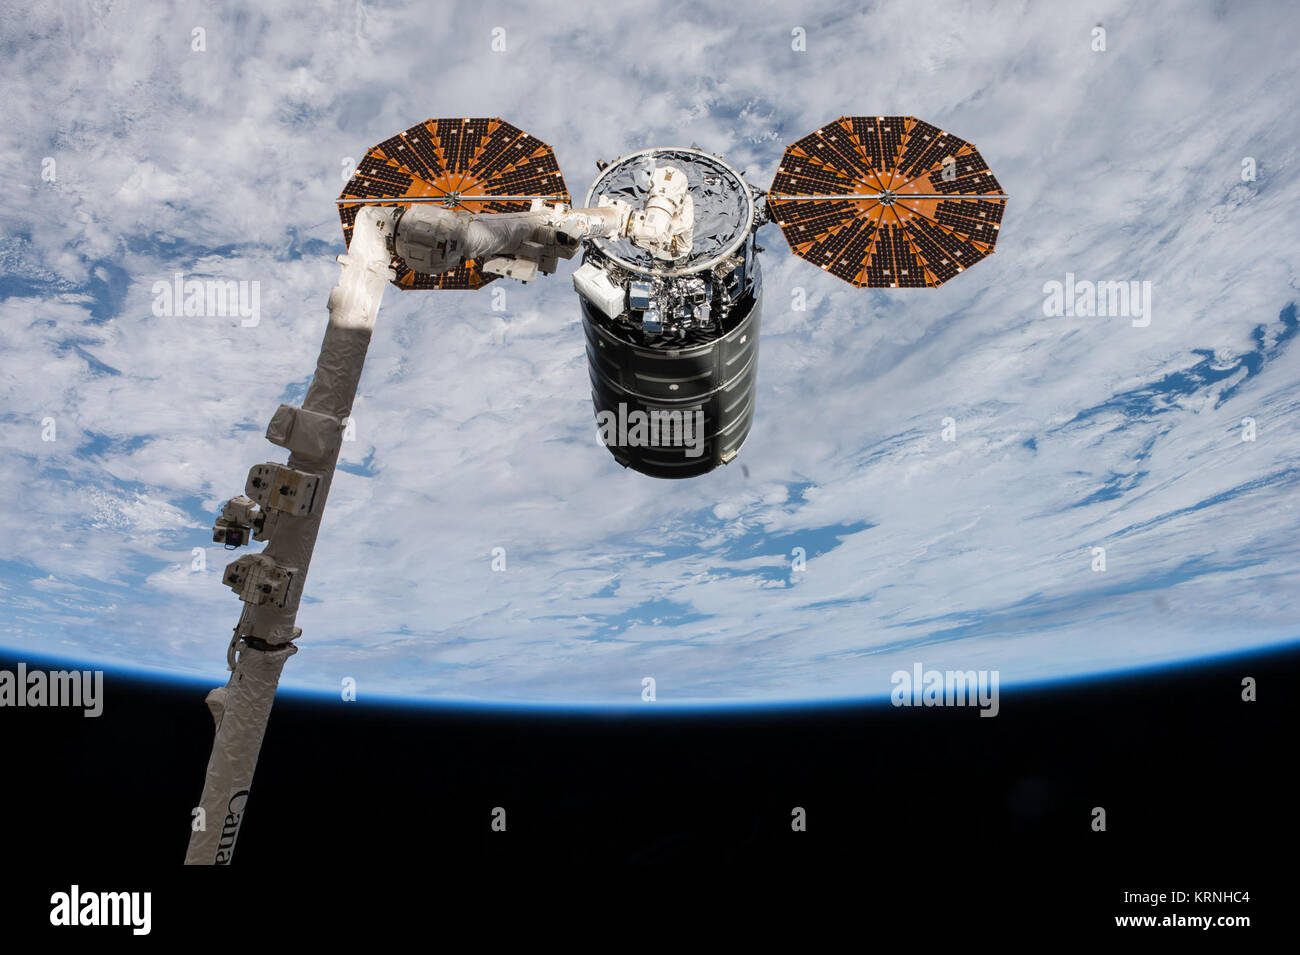 Iss053-e 176292 (Nov. 14, 2017) - - - Der Cygnus Raumfahrzeug wird dargestellt, nachdem es mit der Roboterarm Canadarm2 von den Astronauten Paolo Nespoli und Randy Bresnik an November 14, 2017 festgehalten worden war. ISS-53 Cygnus OA-8 zur ISS grappling Stockfoto